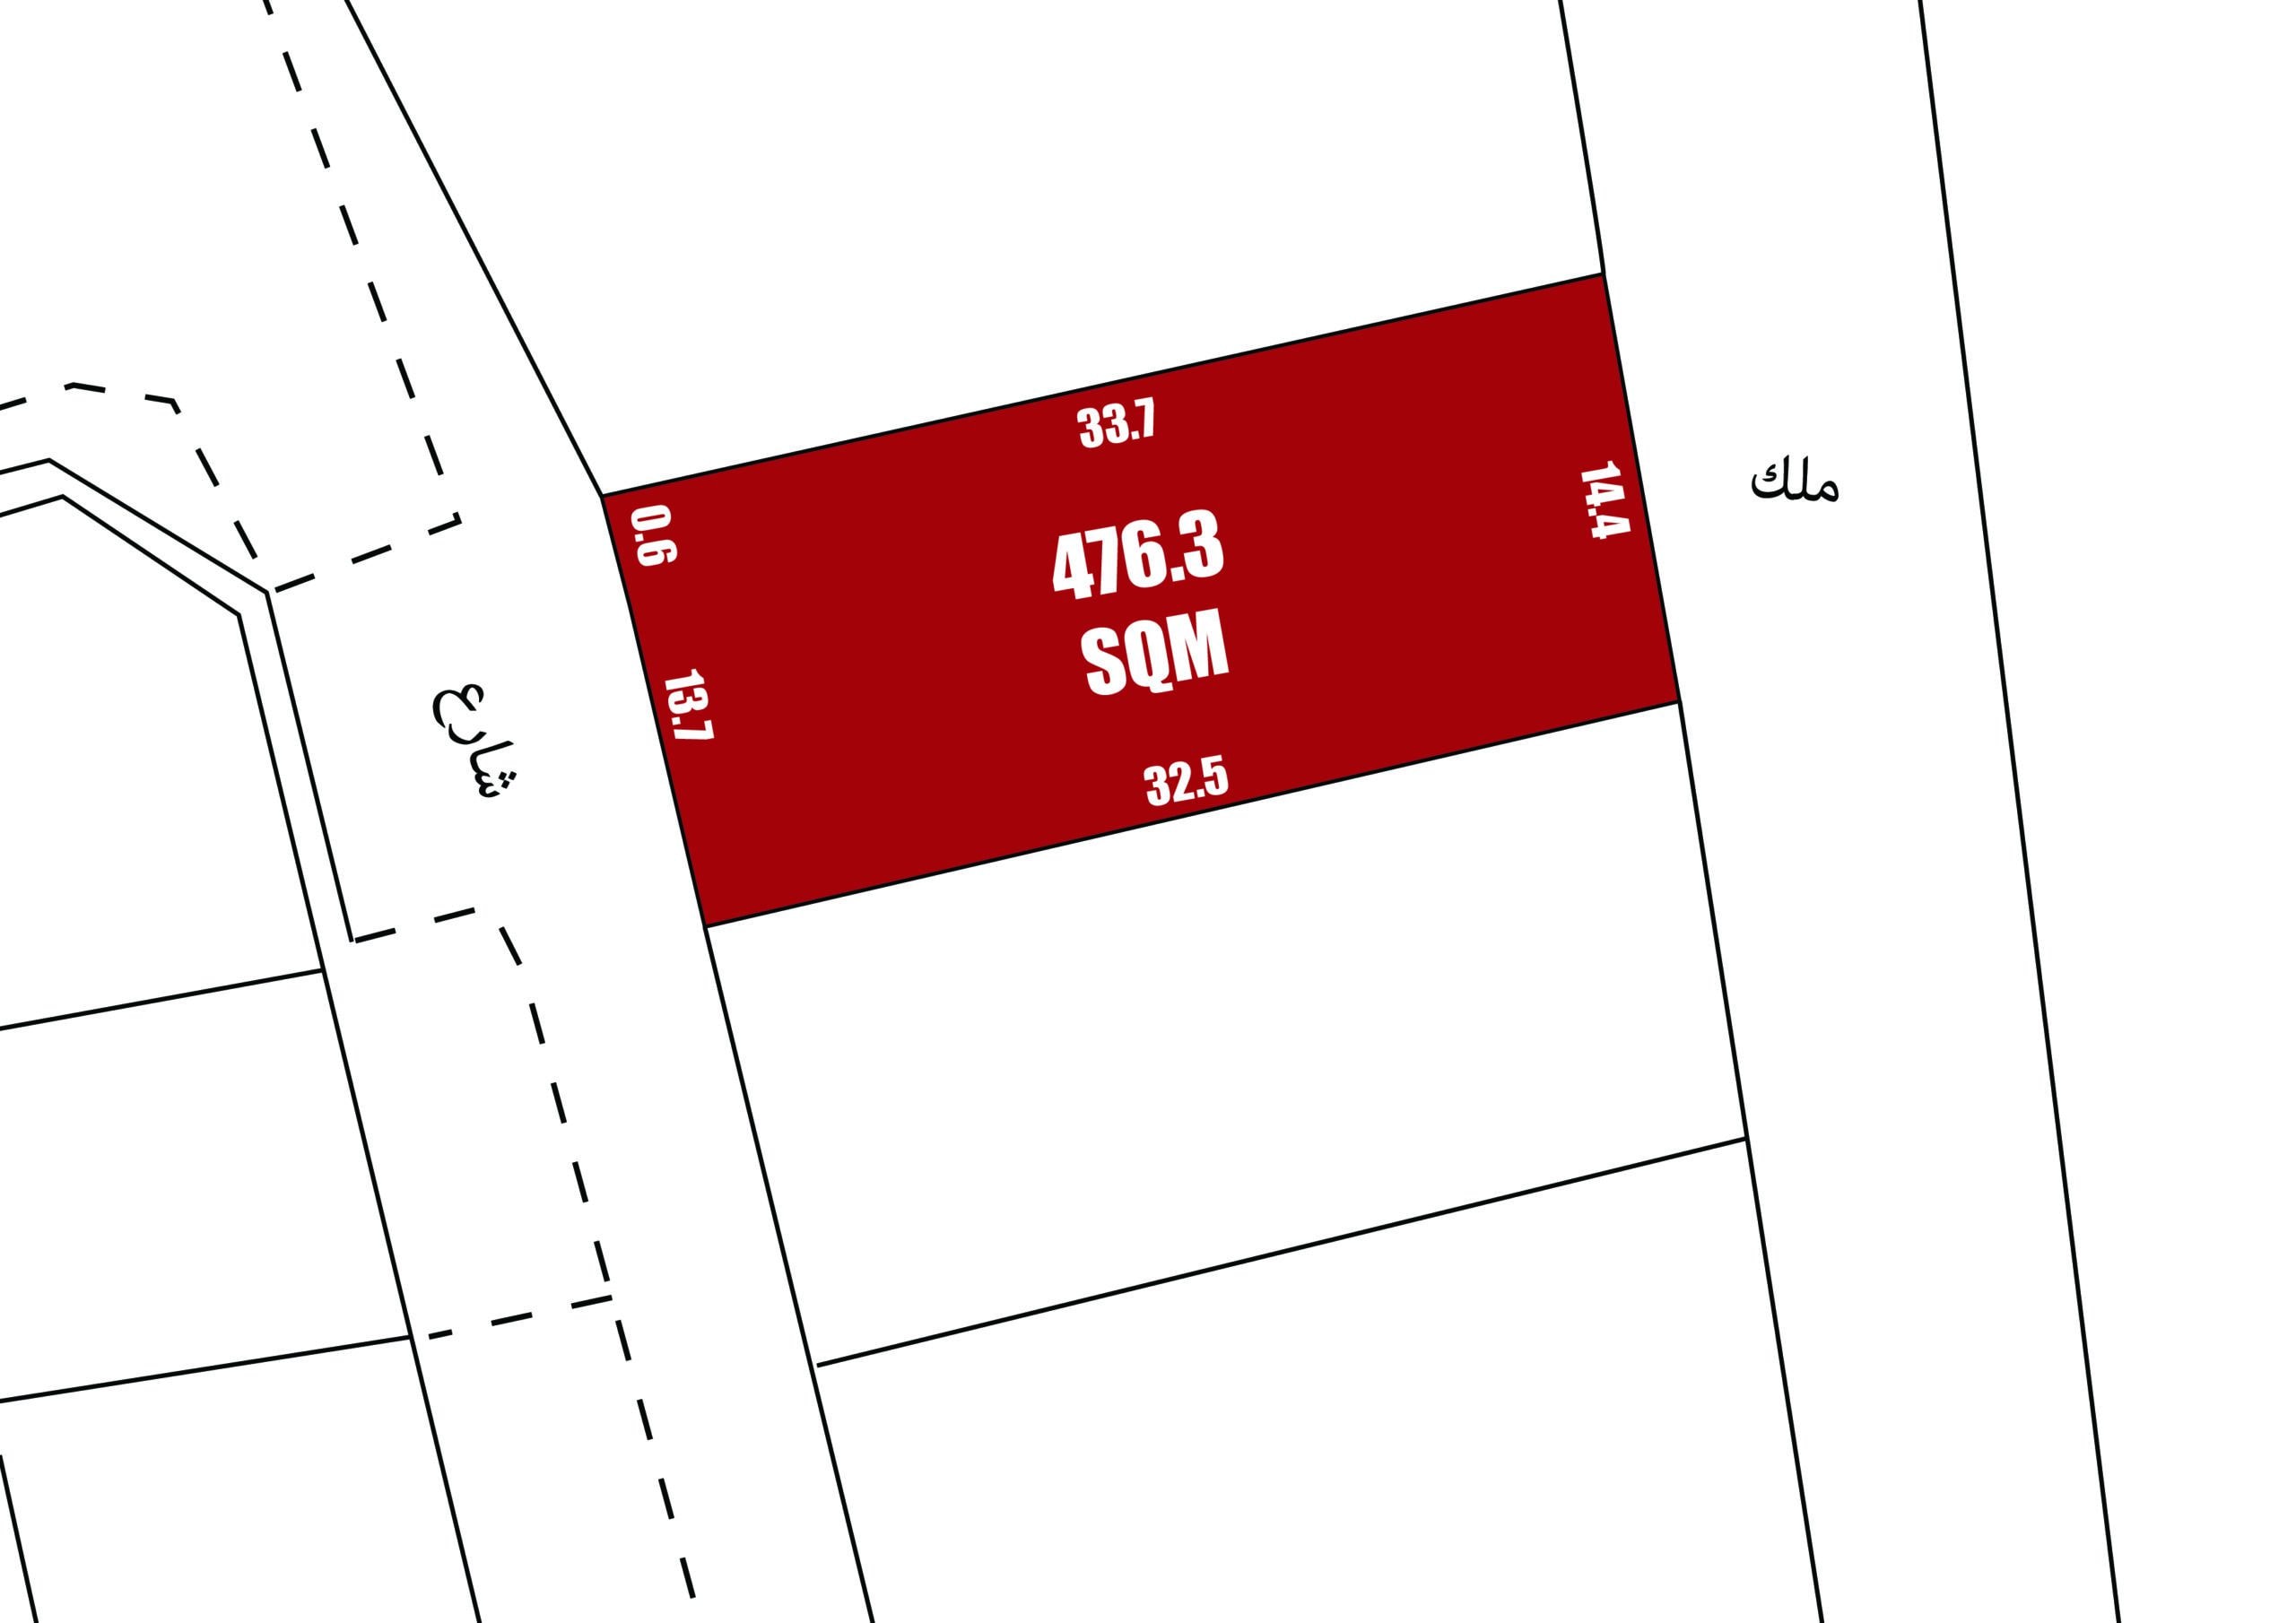 رسم تخطيطي لقطعة أرض حمراء تحمل علامة "سوم" مع القياسات المحيطة الواردة في تخطيط الخريطة الفنية.